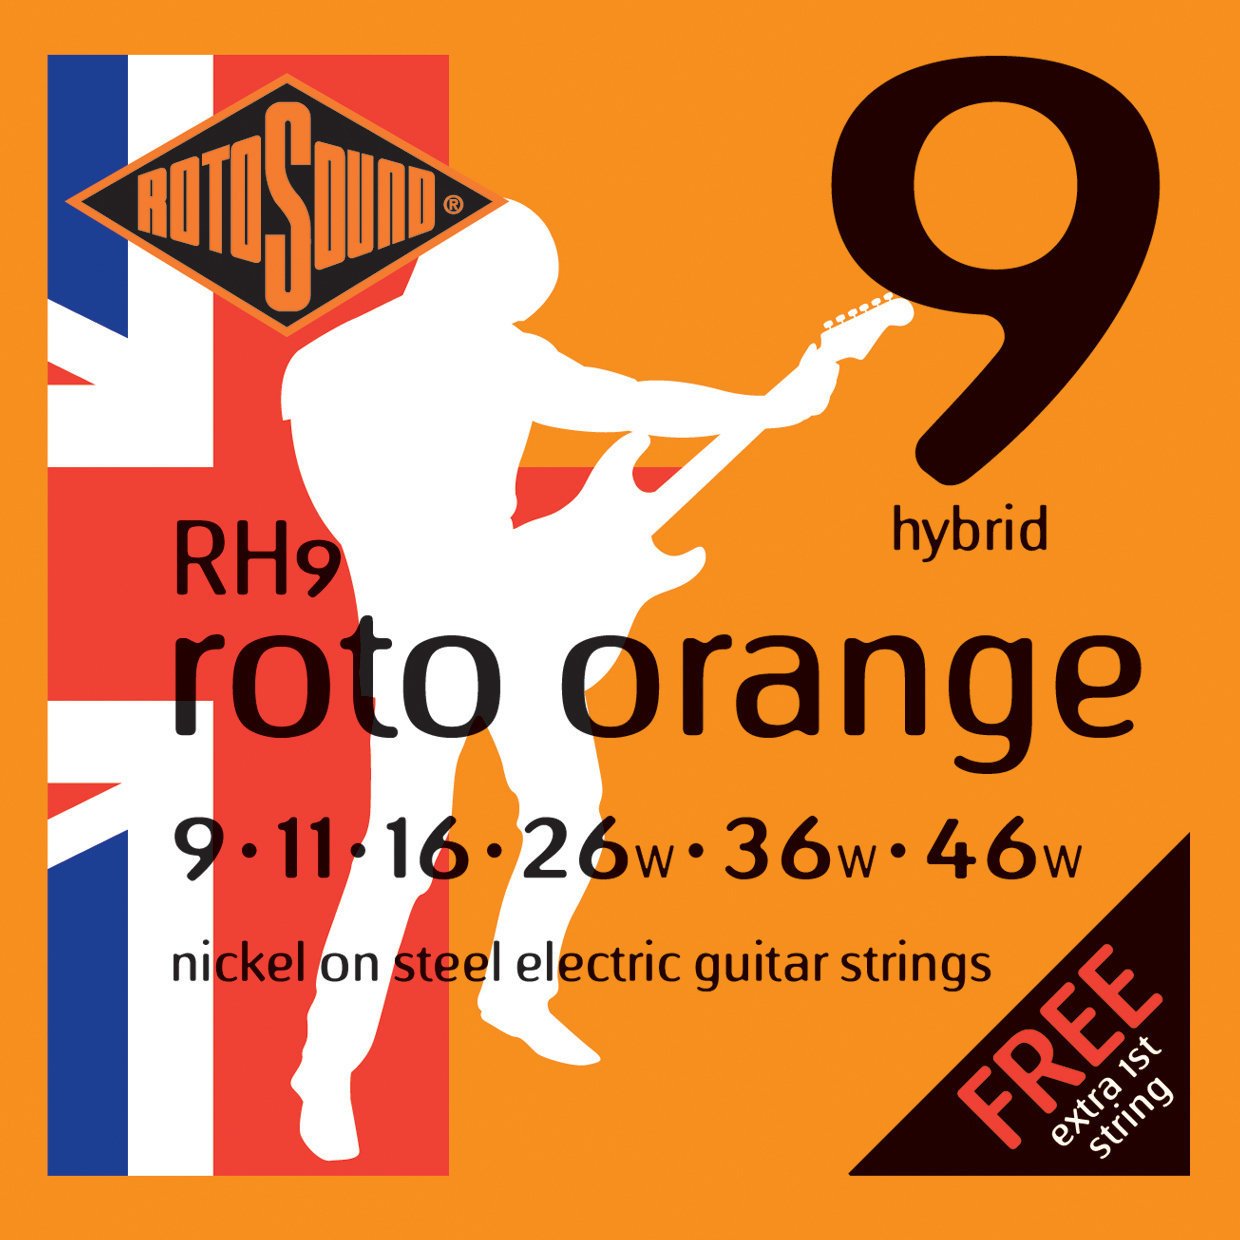 Snaren voor elektrische gitaar Rotosound RH9